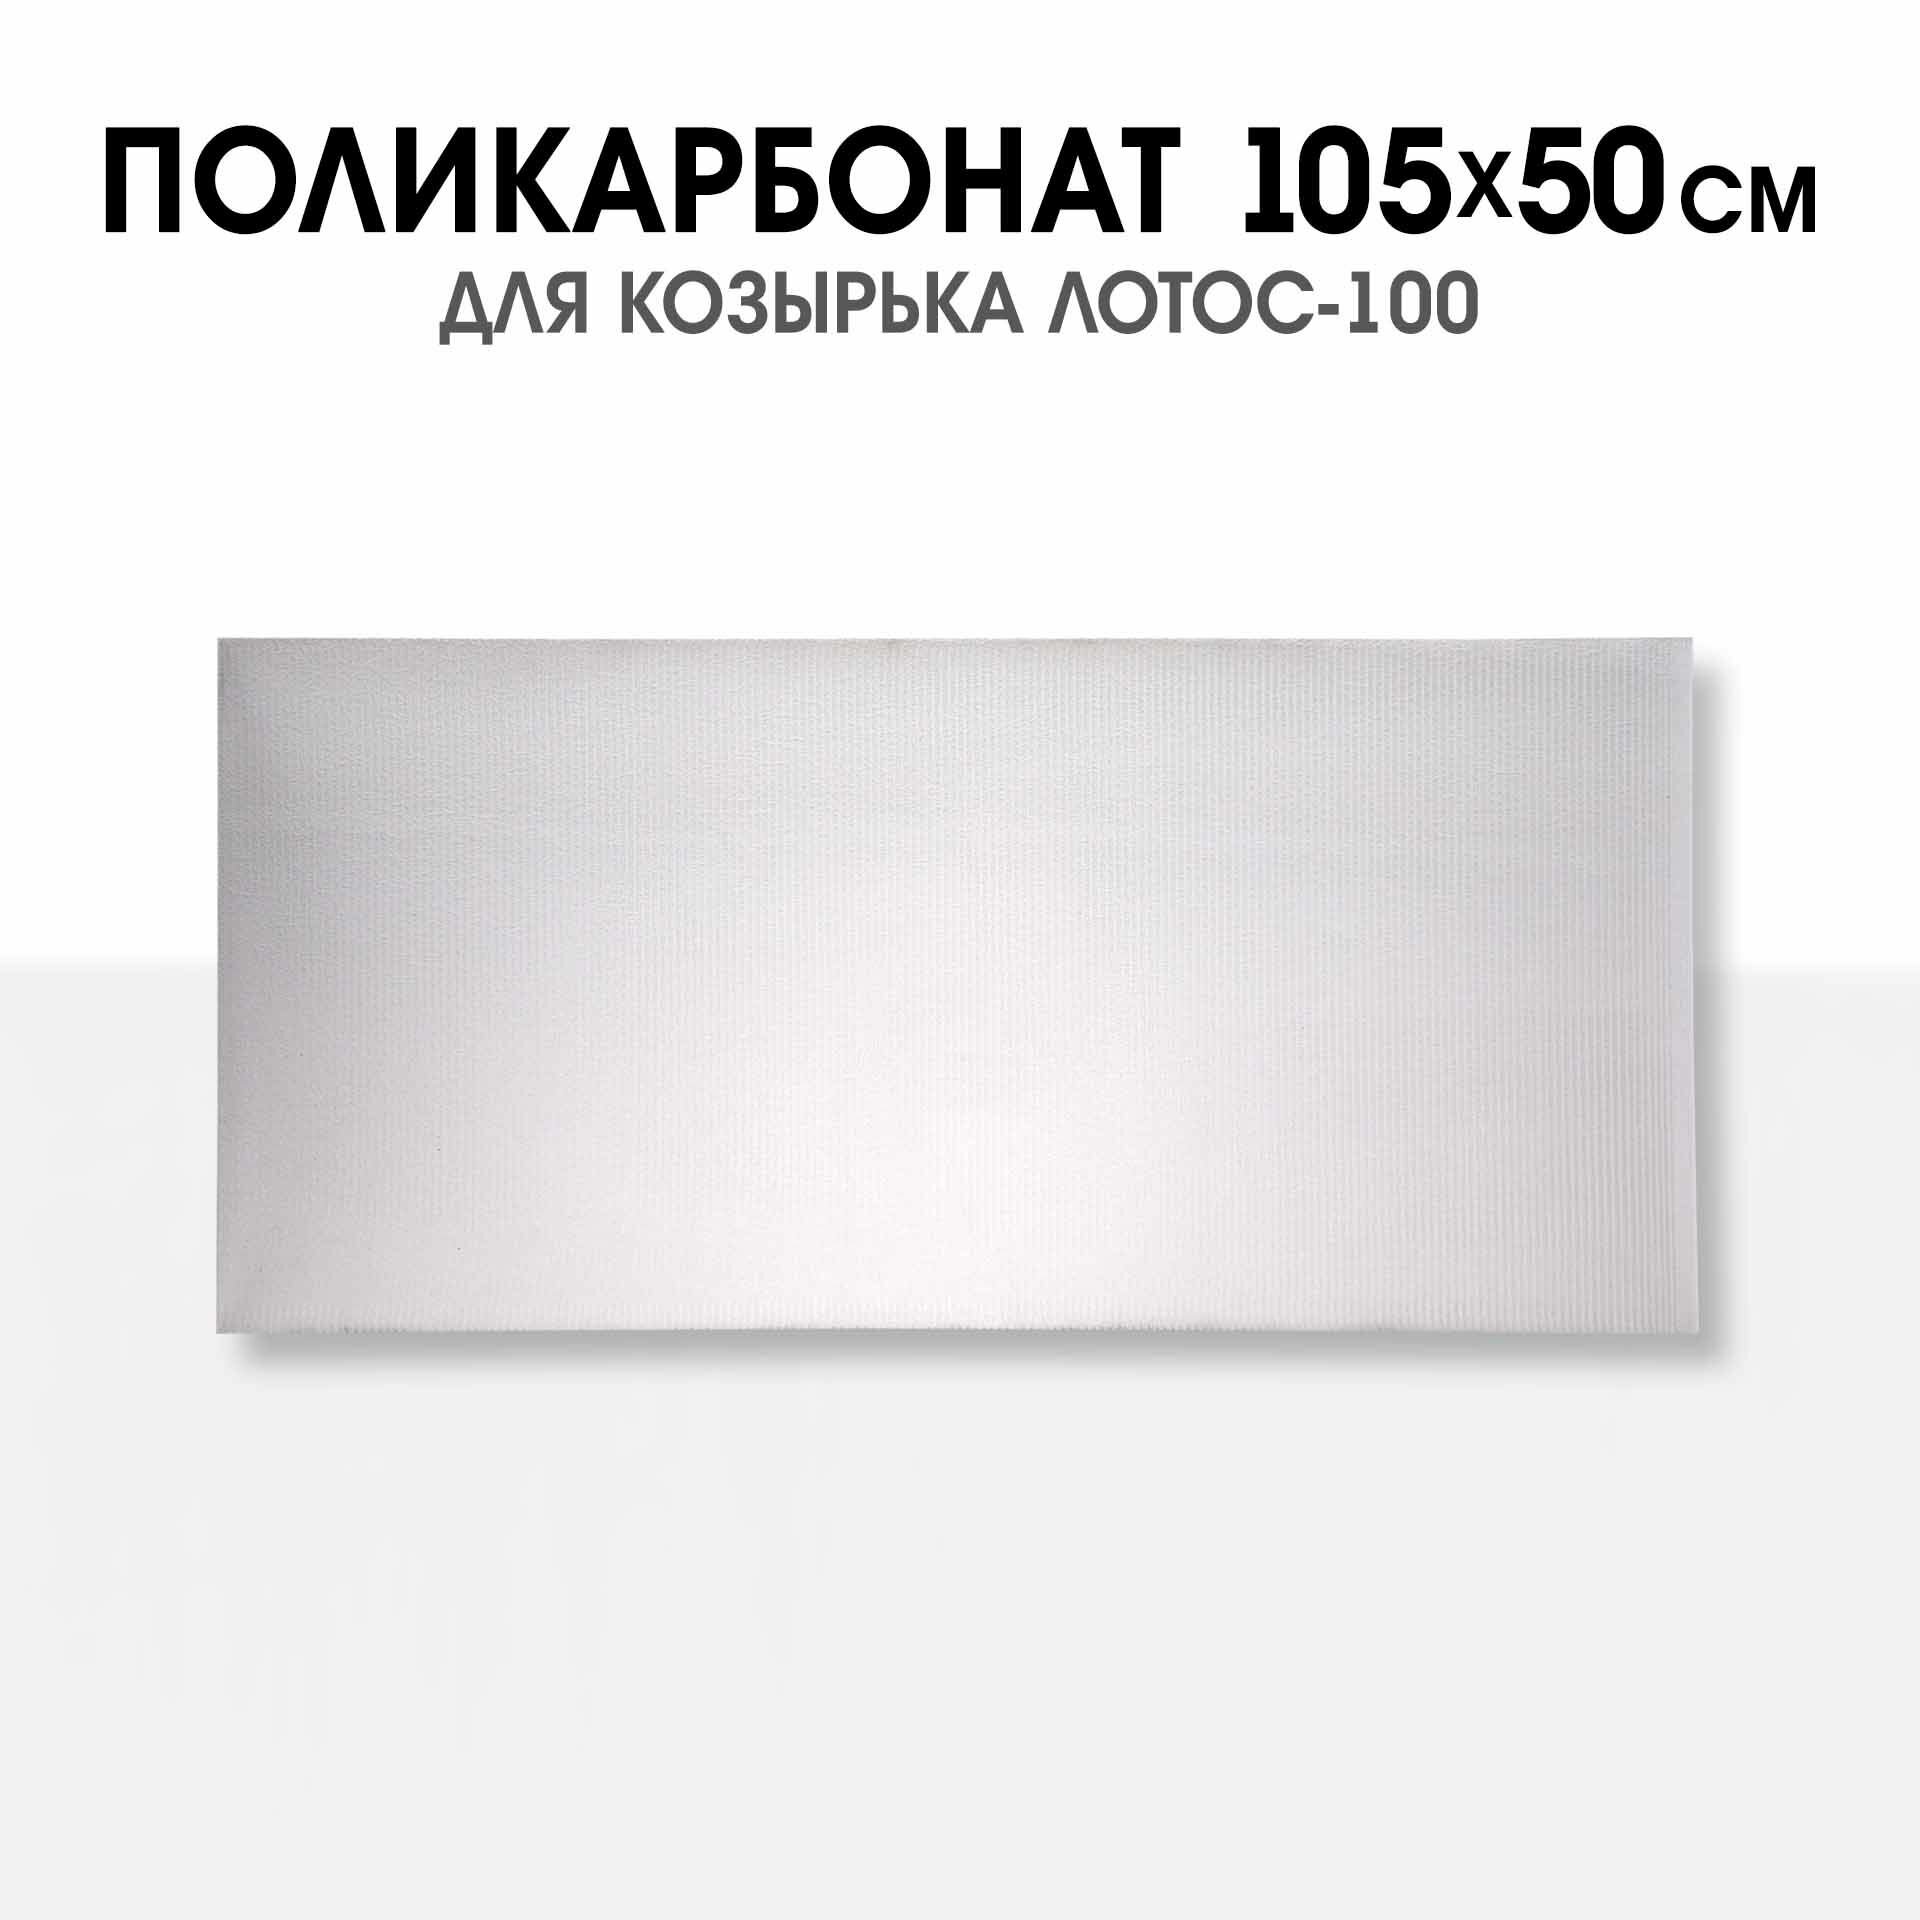 Поликарбонат сотовый 105х50 см. 2 листа. цвет прозрачный. Для козырьков модели Лотос-100